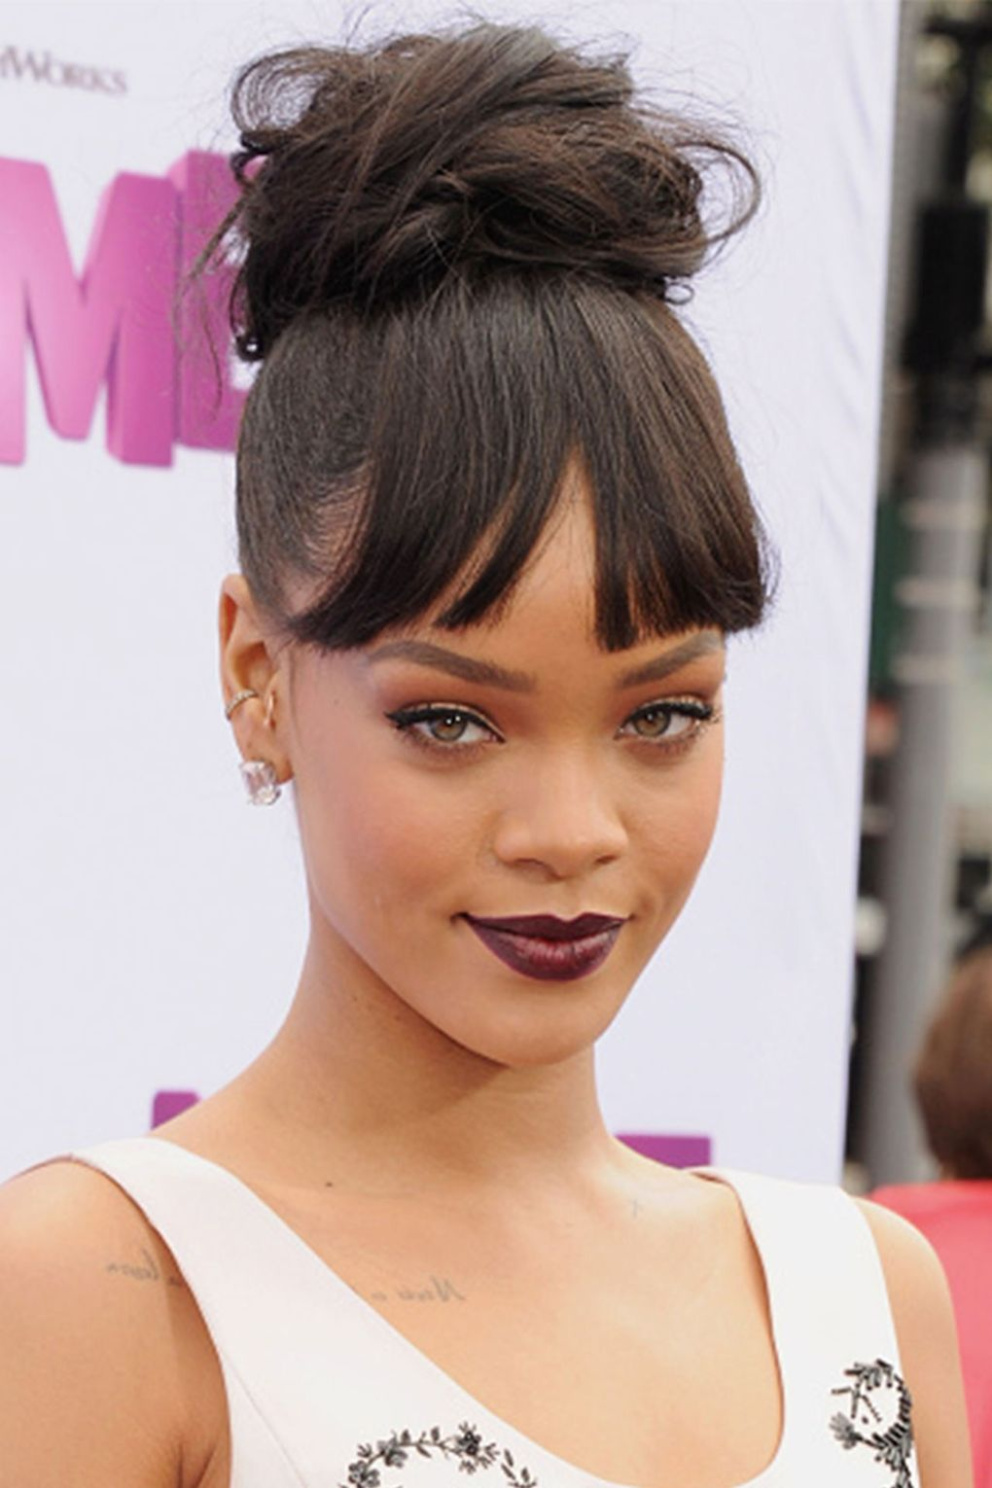 S výraznou ofinou a rtěnkou v borůvkové barvě na sebe Rihanna opět upoutala pozornost při premiéře animovaného filmu&nbsp;Konečně doma.
